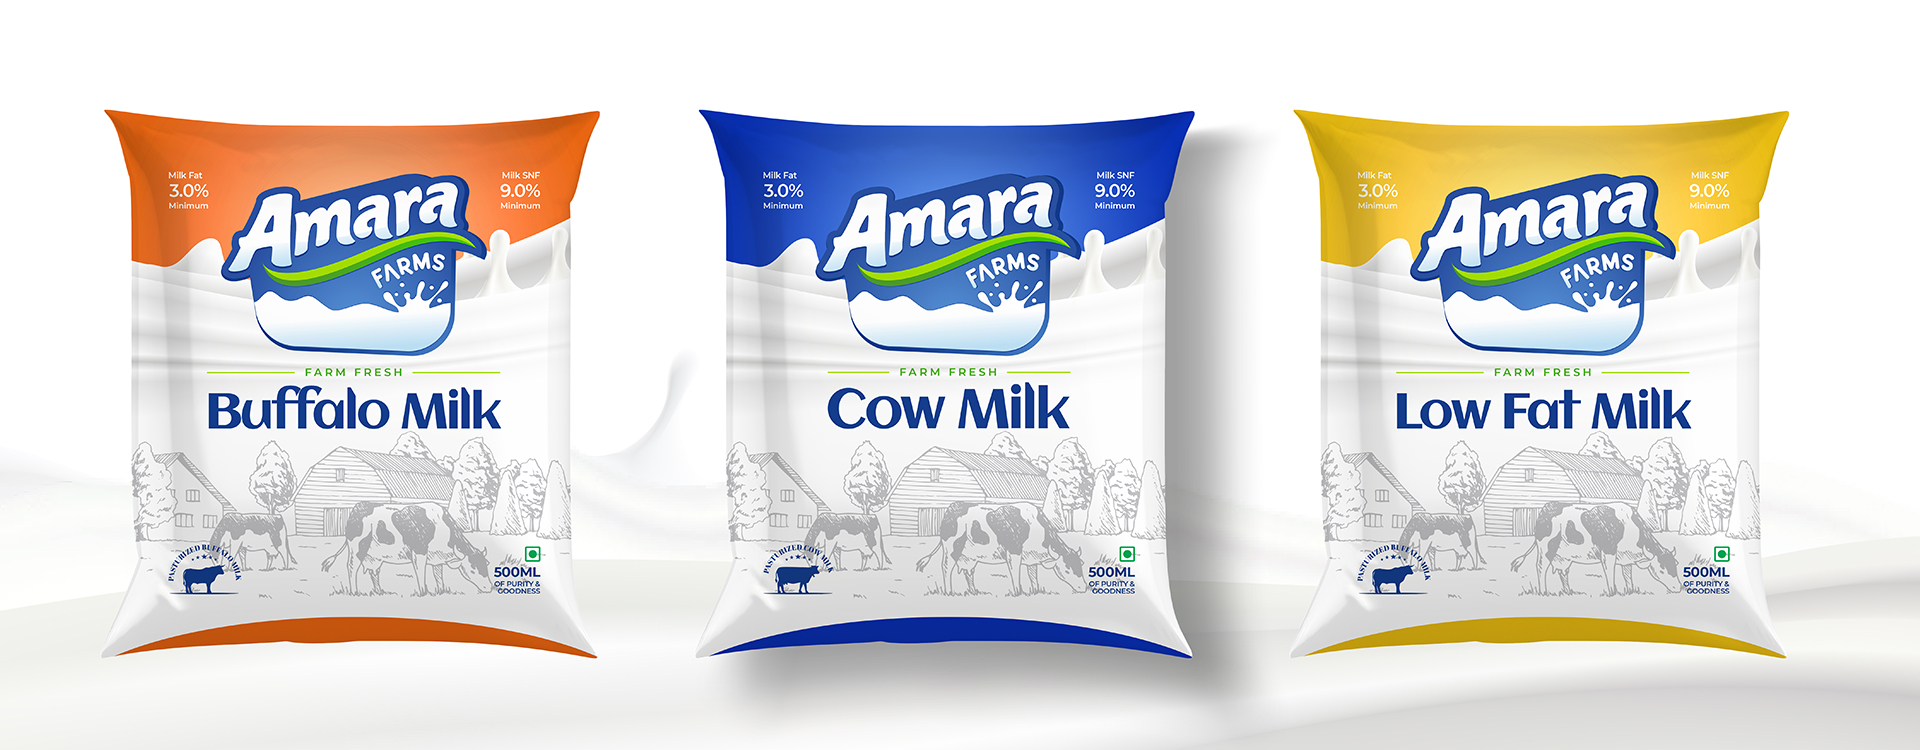 Amara Milk